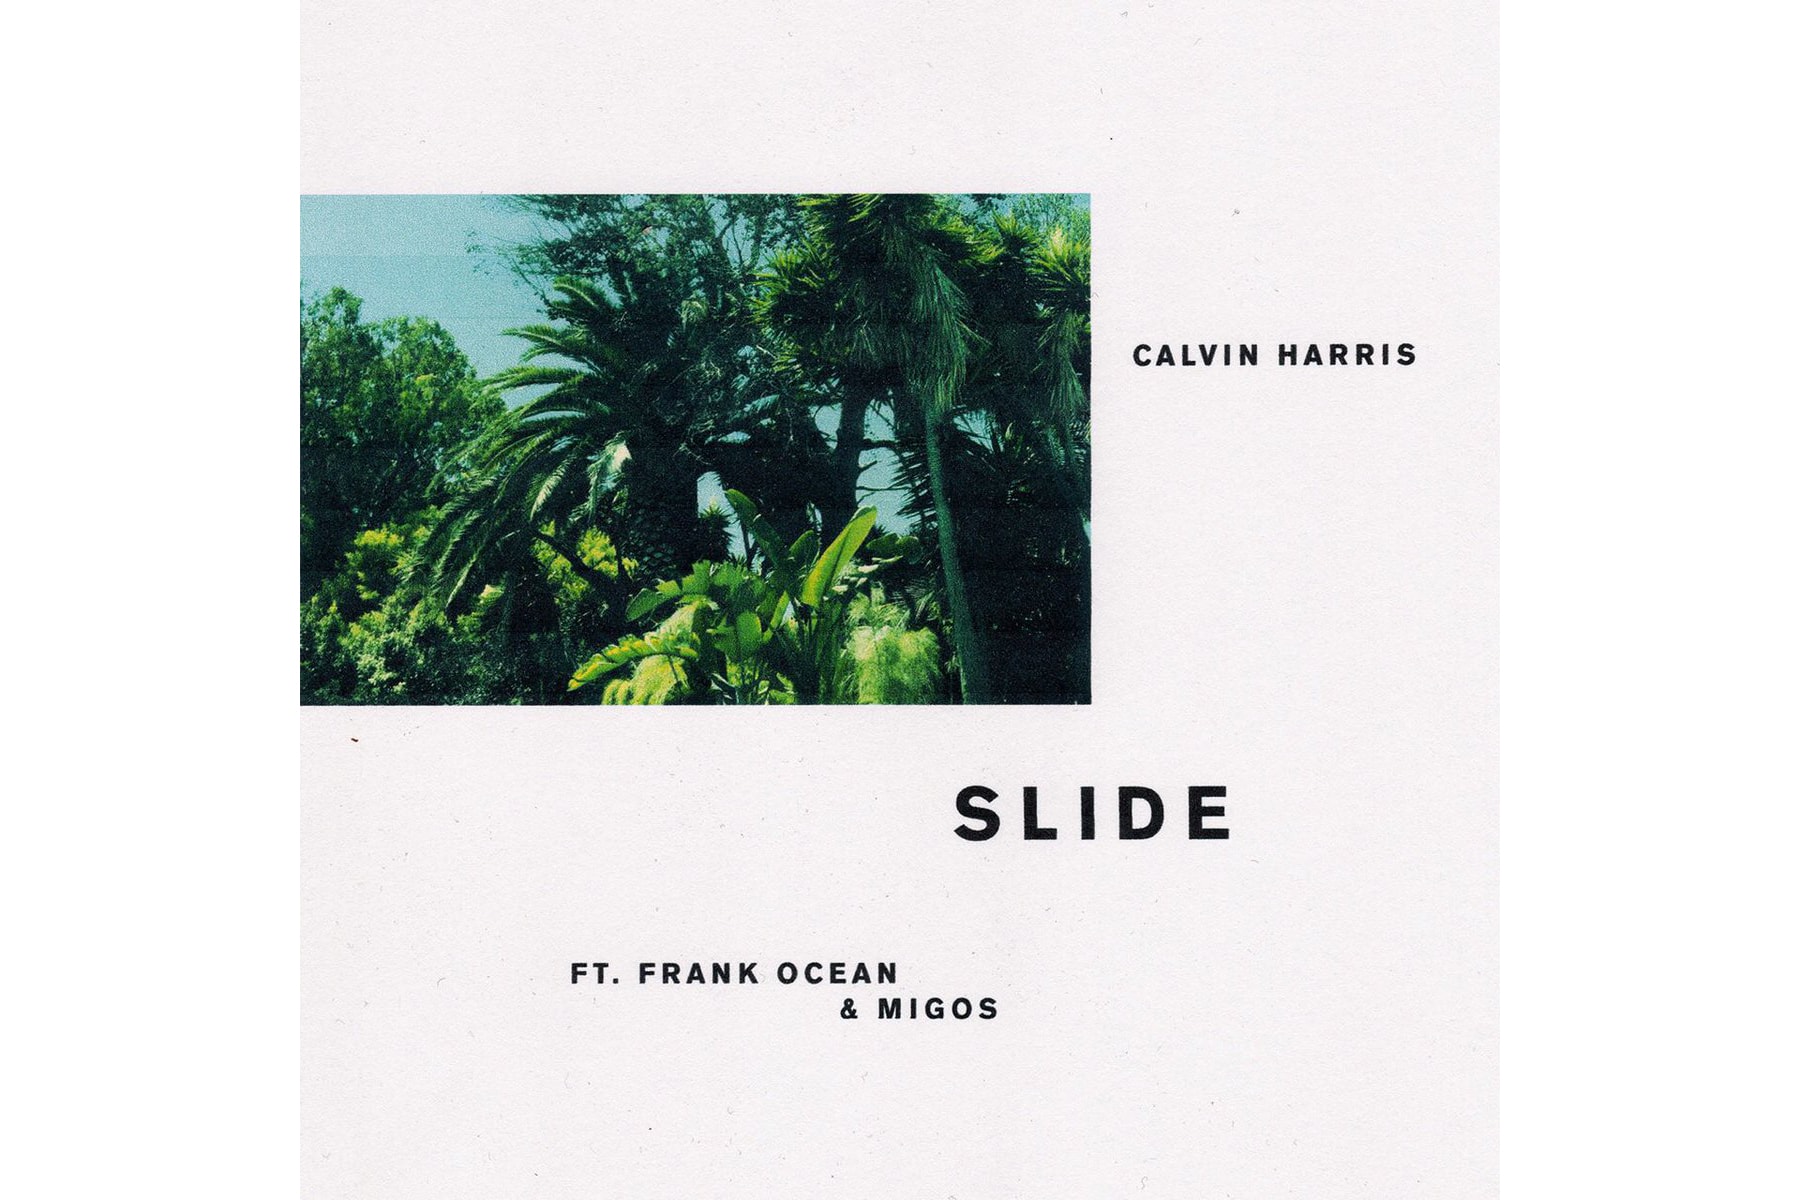 Frank Ocean, Migos & Calvin Harris Finally Drop "Slide"